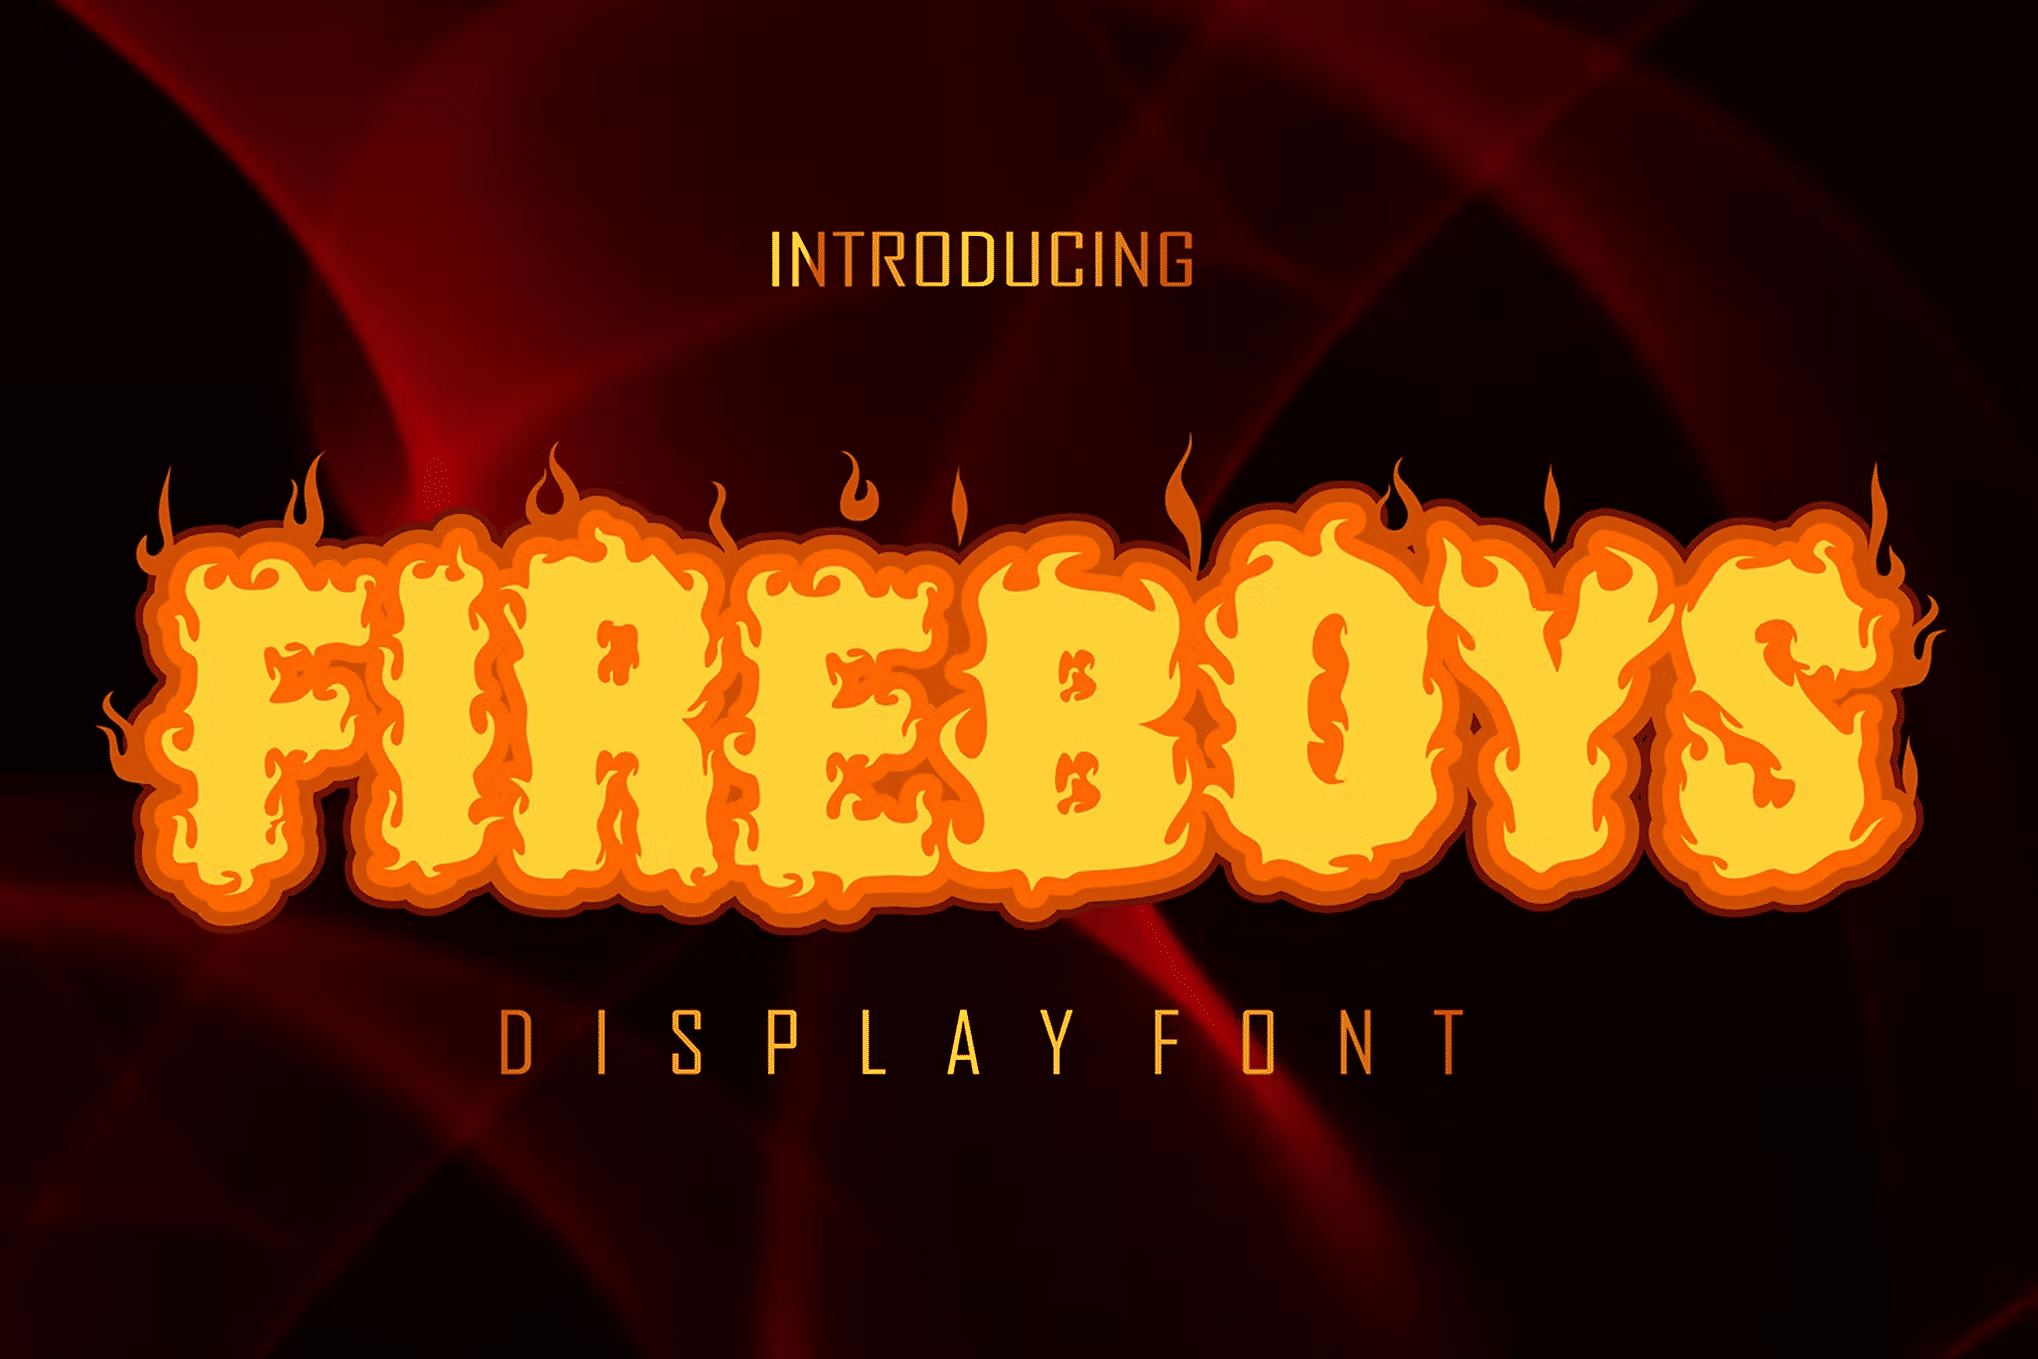 flame script font